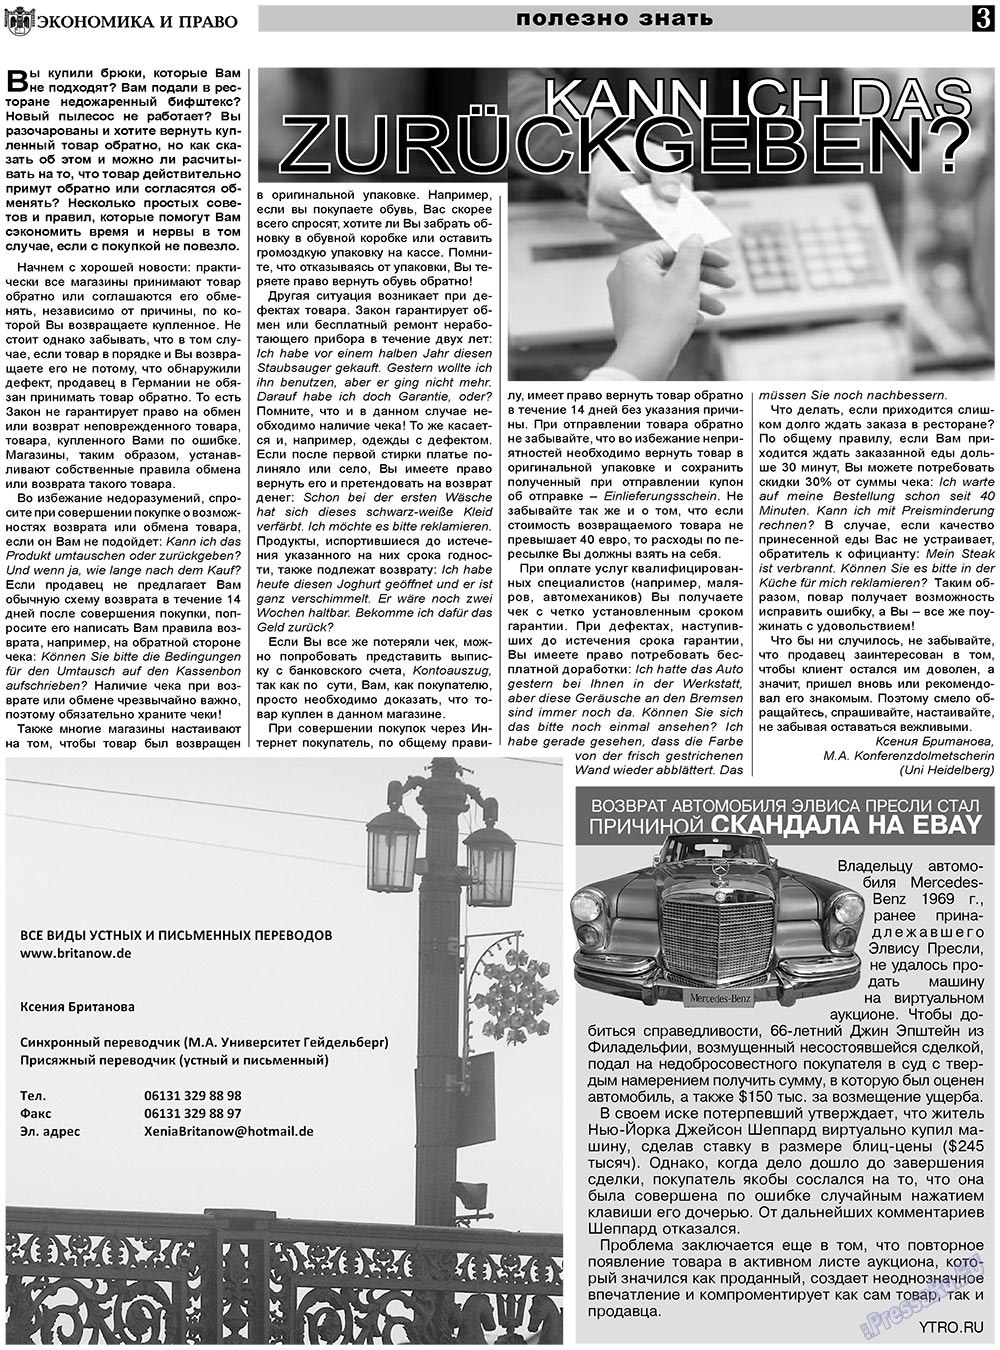 Экономика и право, газета. 2010 №11 стр.3